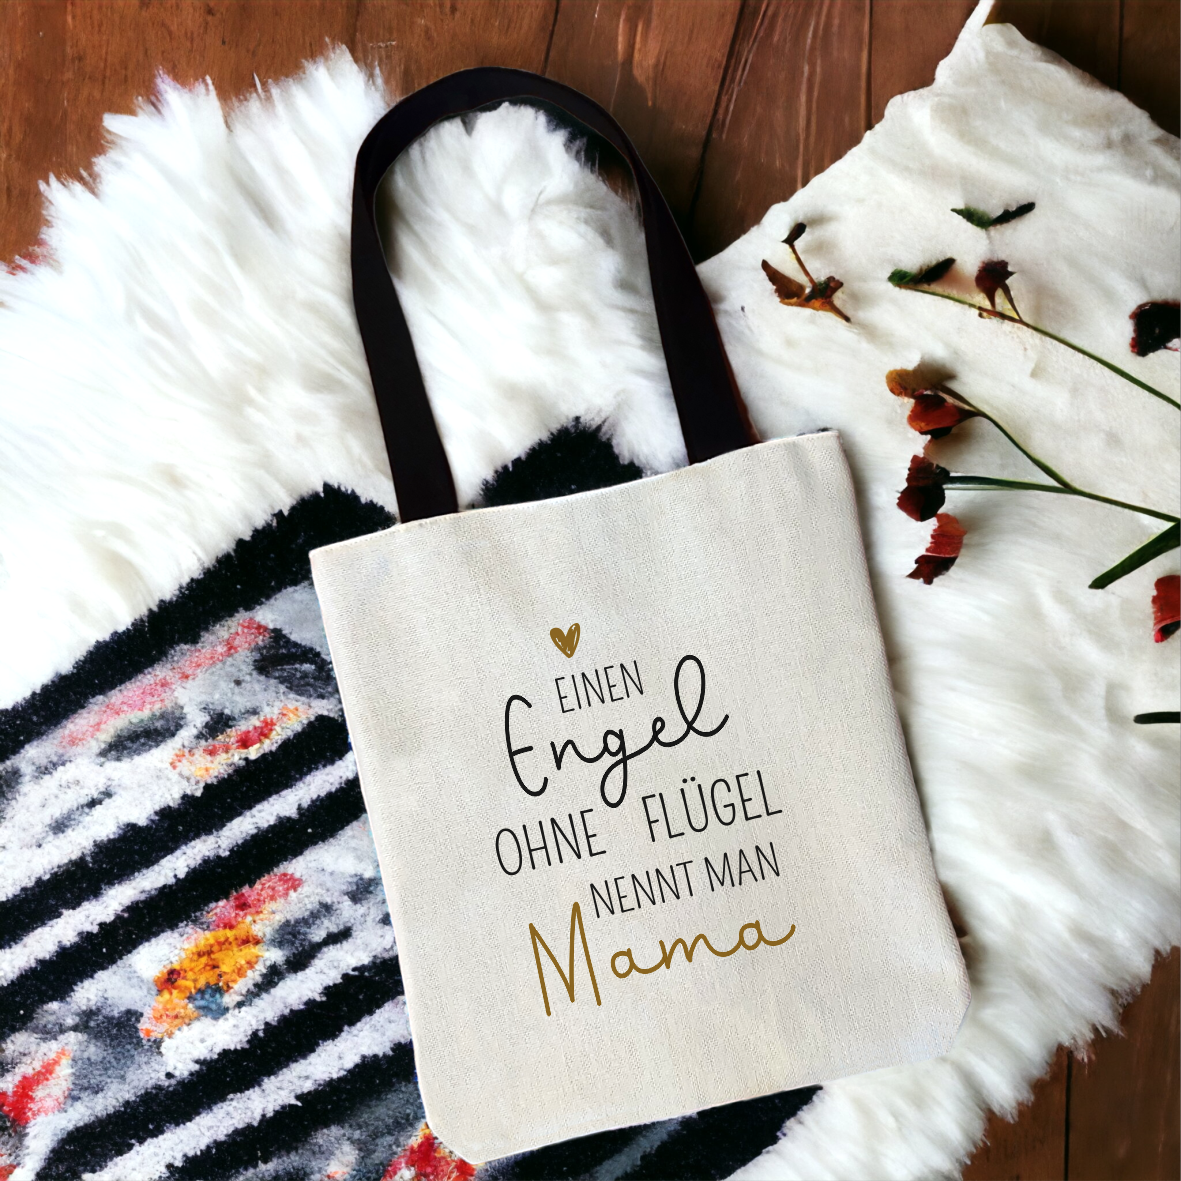 Einkaufstasche "Einen Engel ohne Flügel nennt man Mama"